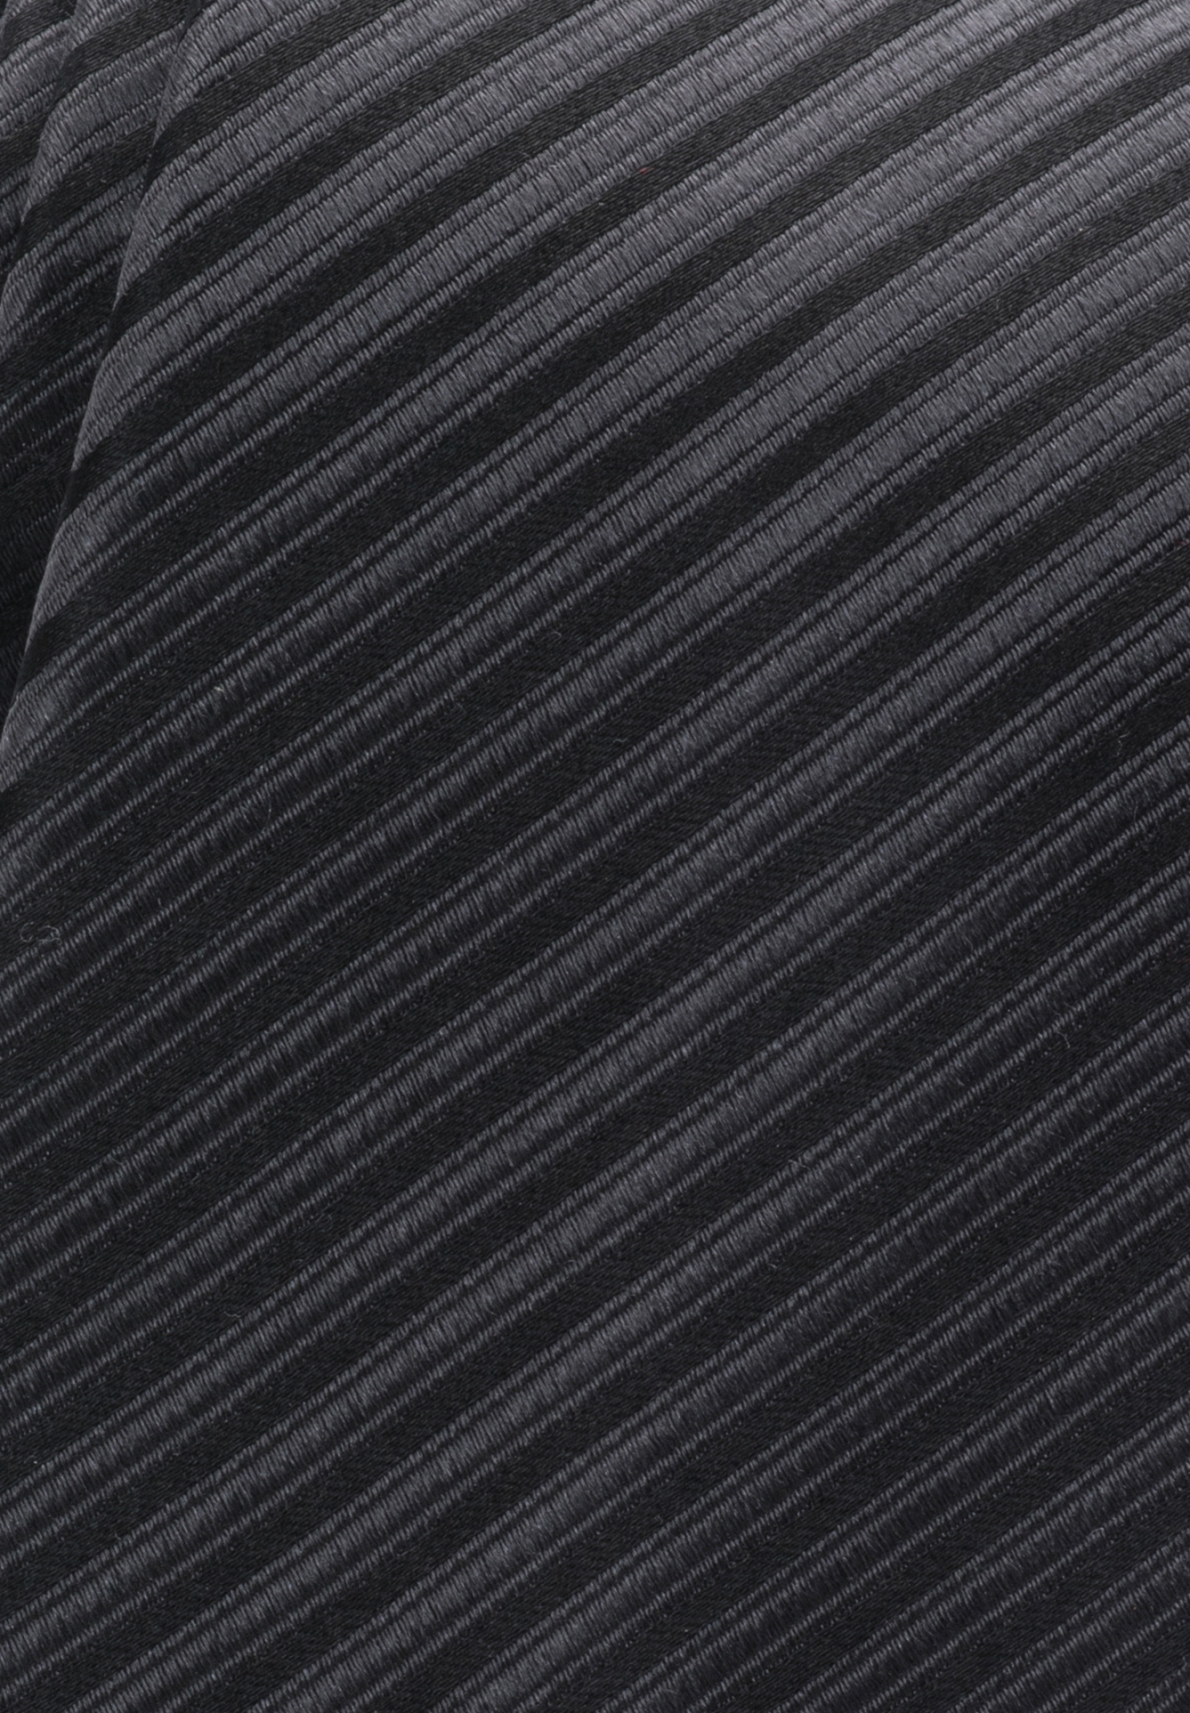 Eterna Krawatte schwarz gestreift 9716-39 | MENSONO